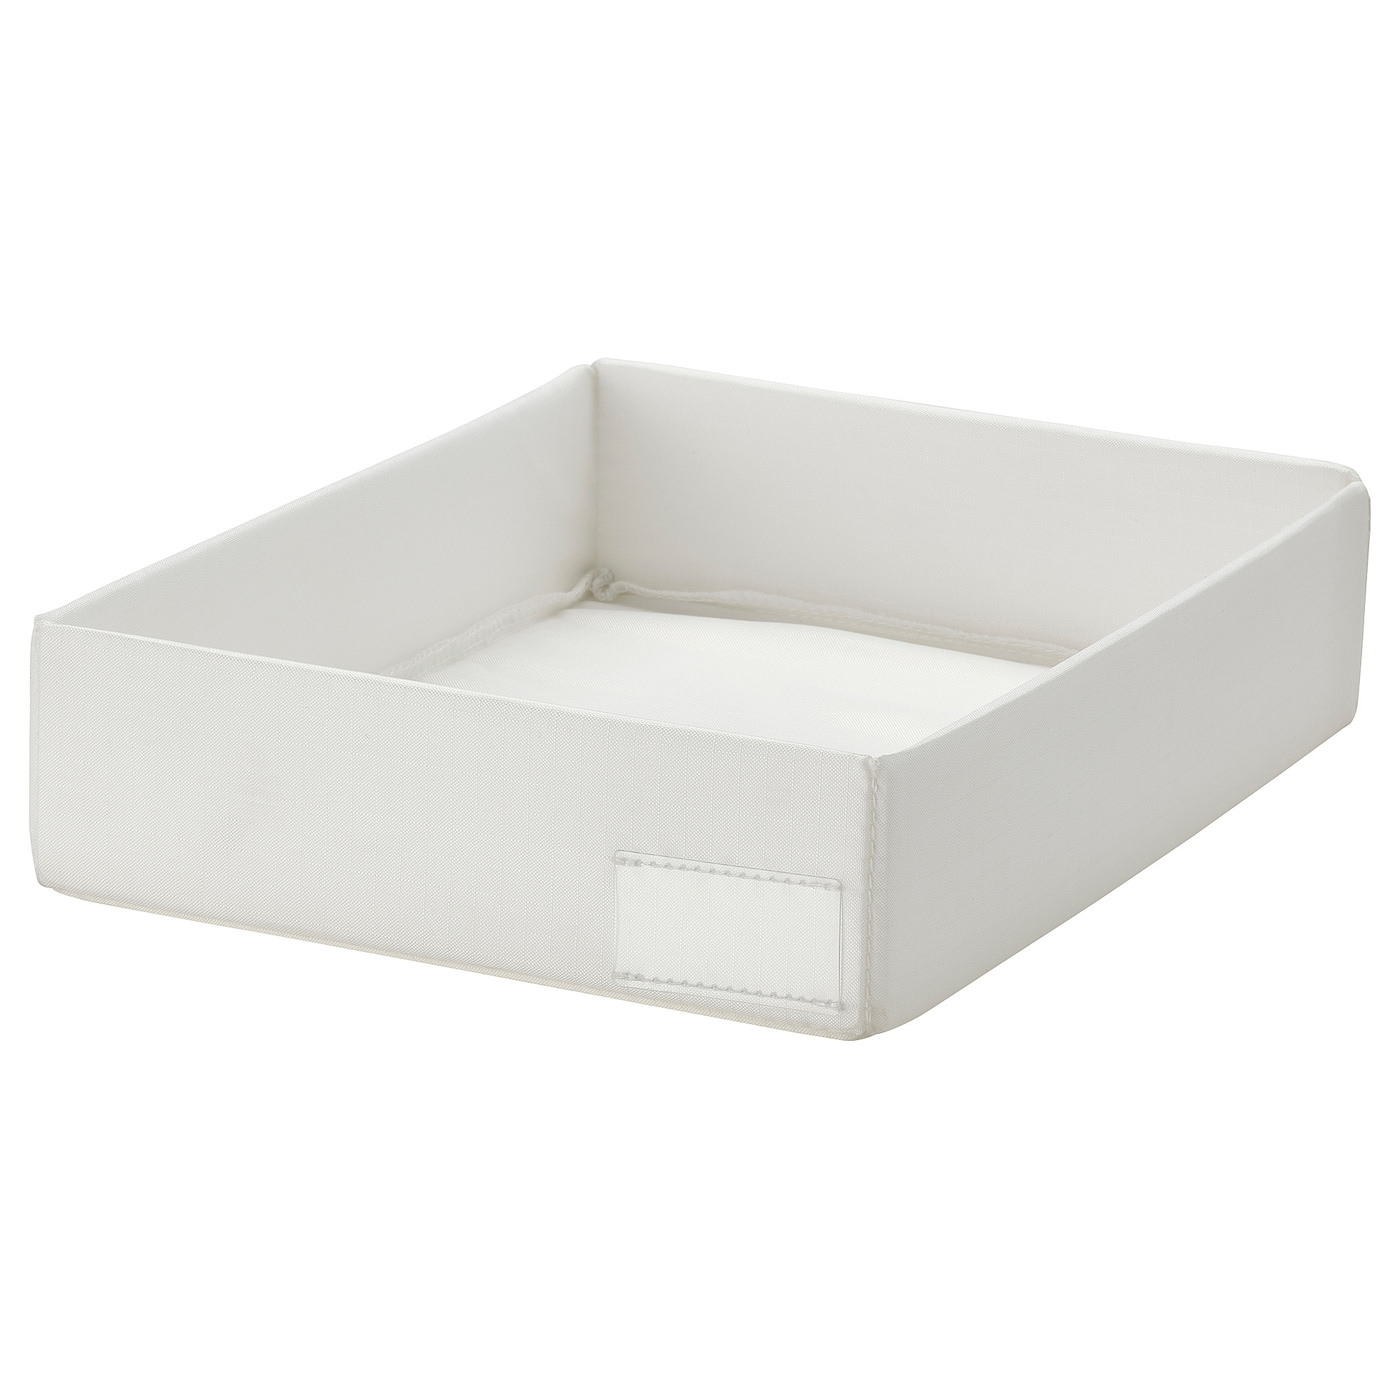 STUK СТУК Органайзер, белый, 26x20x6 см IKEA органайзер для нижнего белья бюстгальтеров ящик для хранения органайзеры для шкафа разделители для нижнего белья шарфов носков бюстга